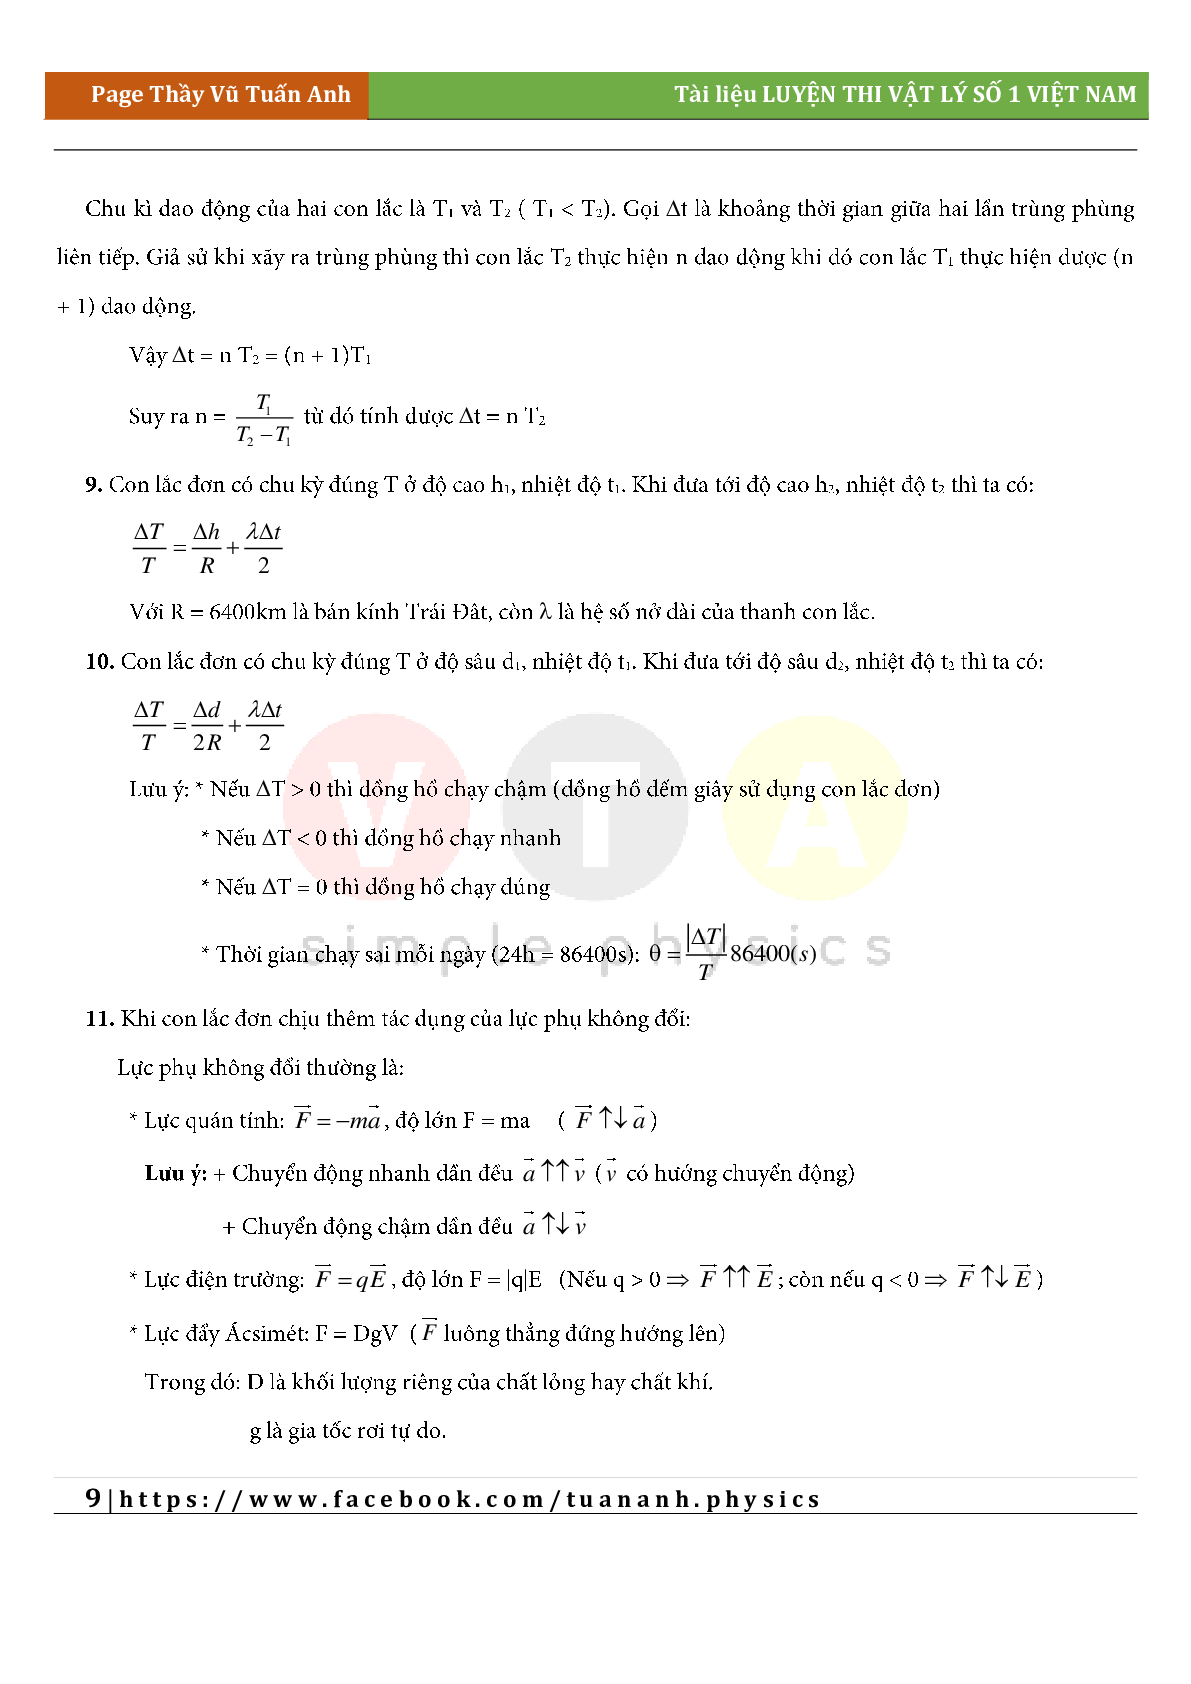 Công thức giải siêu nhanh môn Vật lý lớp 12 cả năm (trang 9)